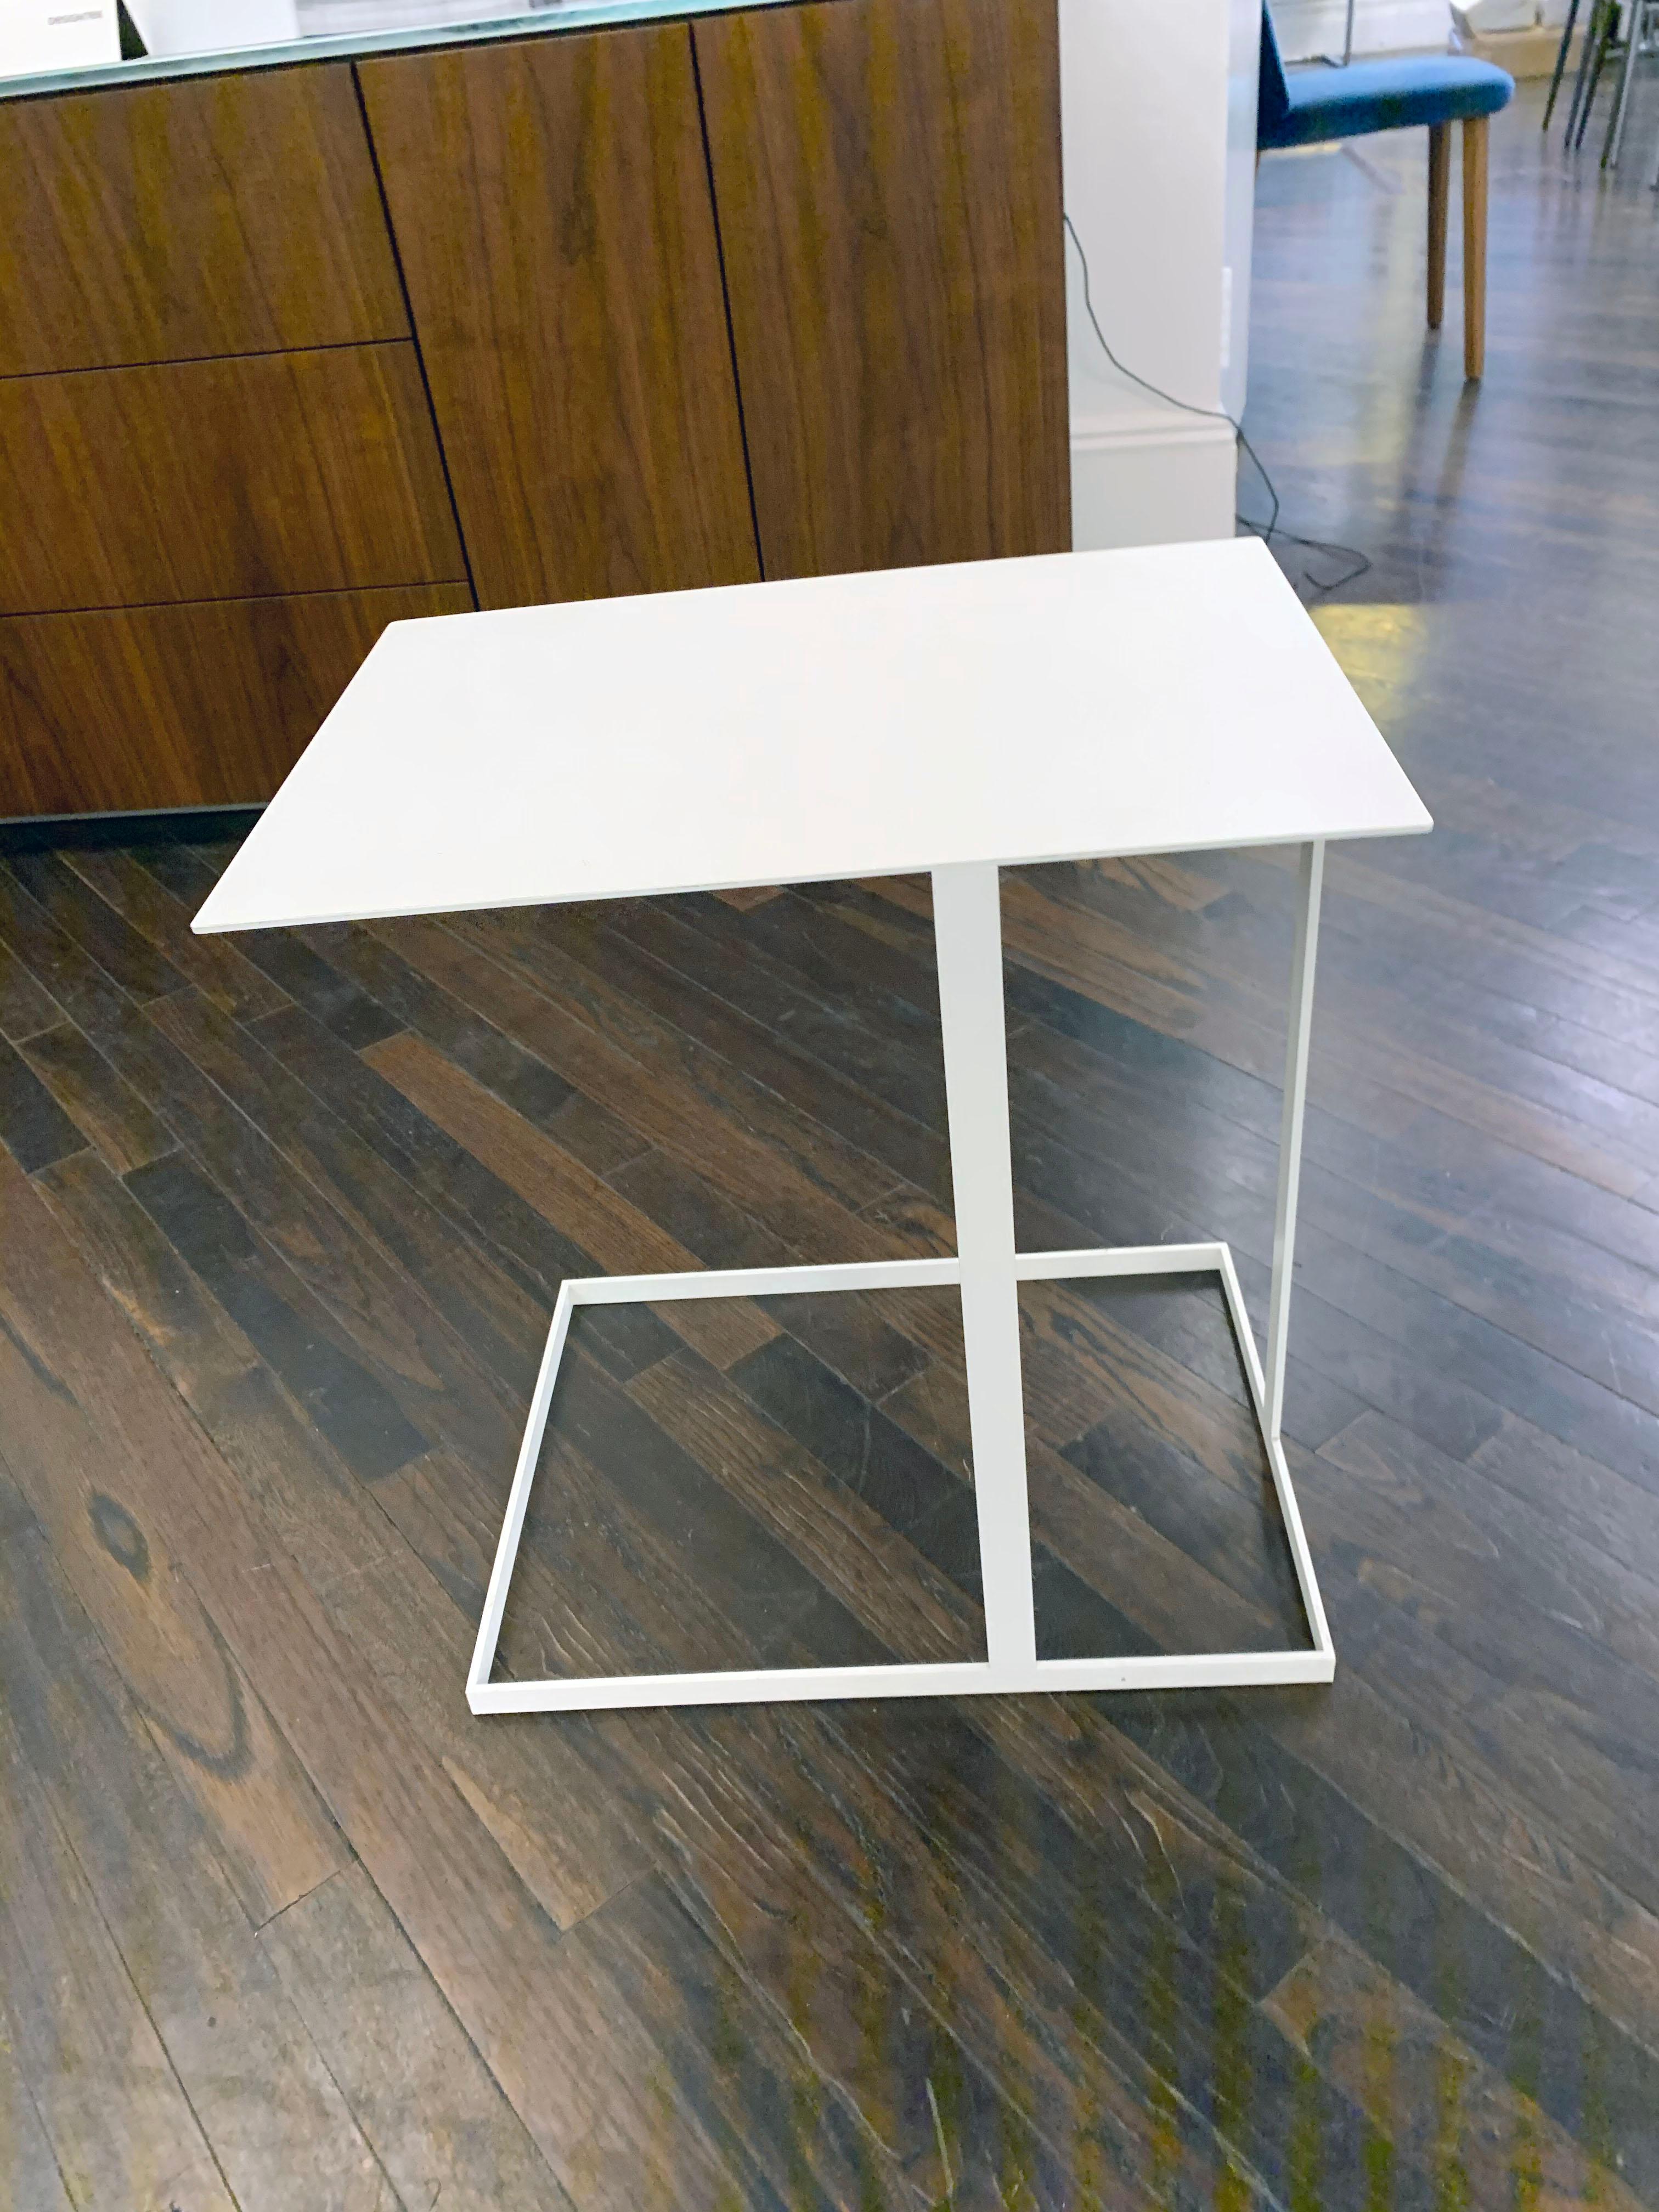 Annex est une table d'appoint multifonctionnelle. Le support présente des structures asymétriques de bandes métalliques plates. Les fonctions du plateau libre avec projection sont évidentes et sont idéales pour travailler depuis le canapé ou la